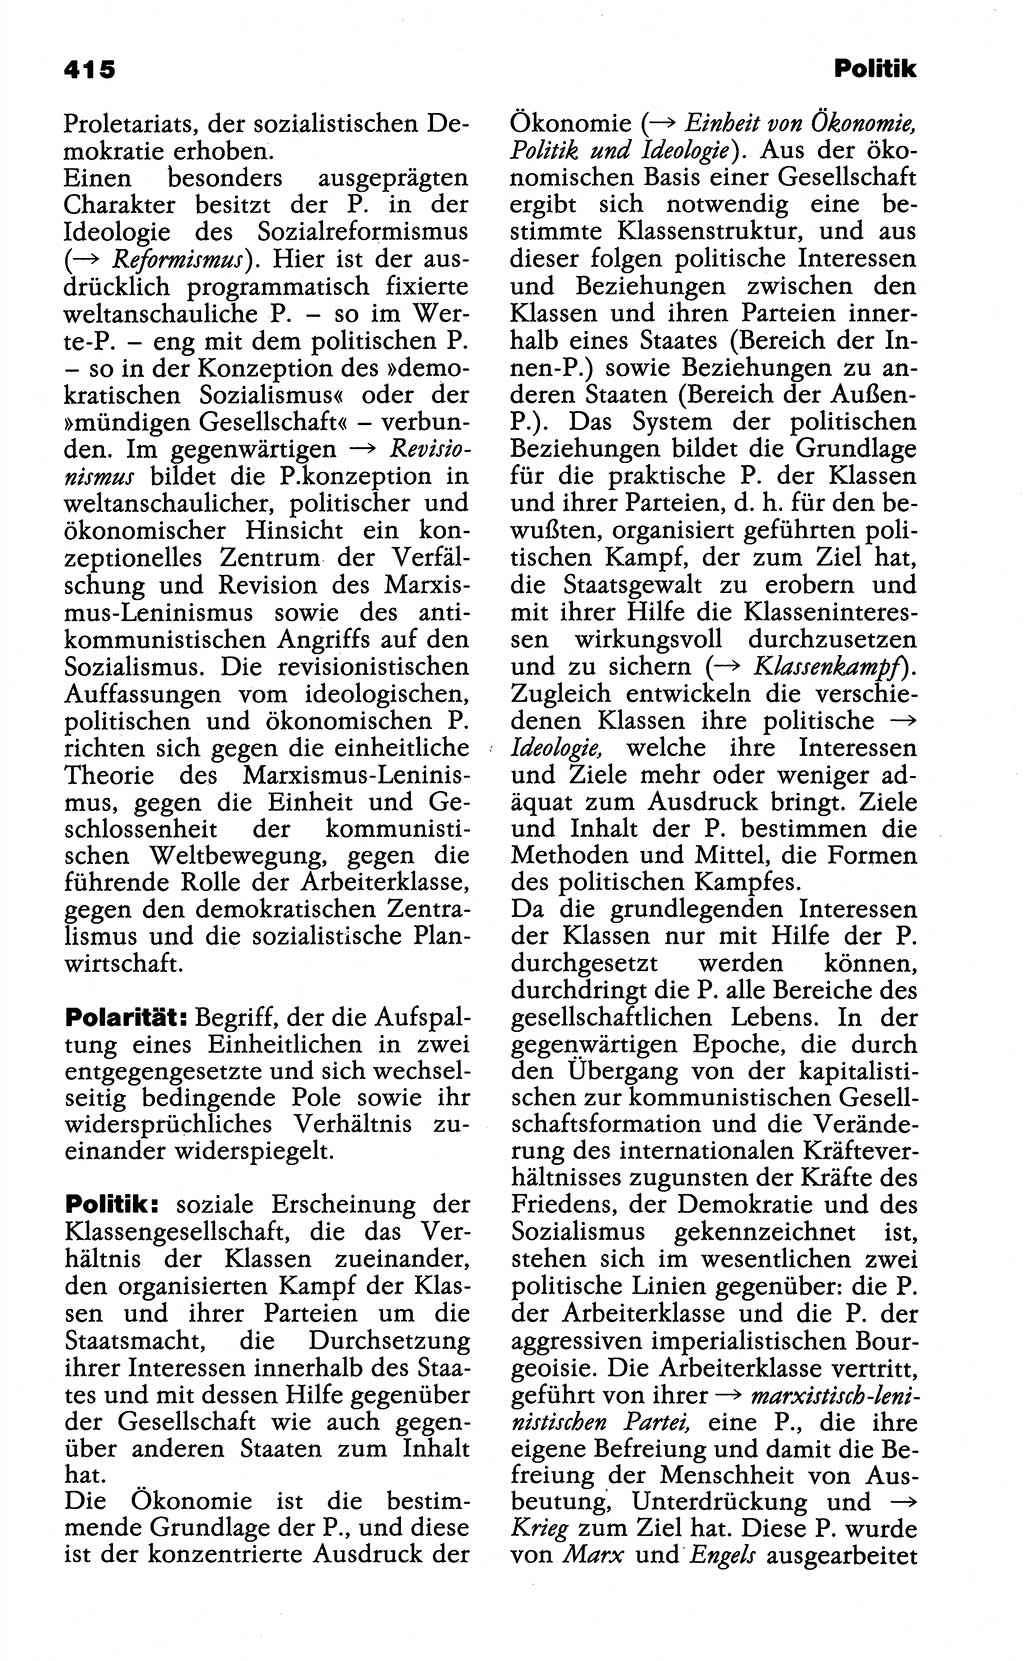 Wörterbuch der marxistisch-leninistischen Philosophie [Deutsche Demokratische Republik (DDR)] 1985, Seite 415 (Wb. ML Phil. DDR 1985, S. 415)